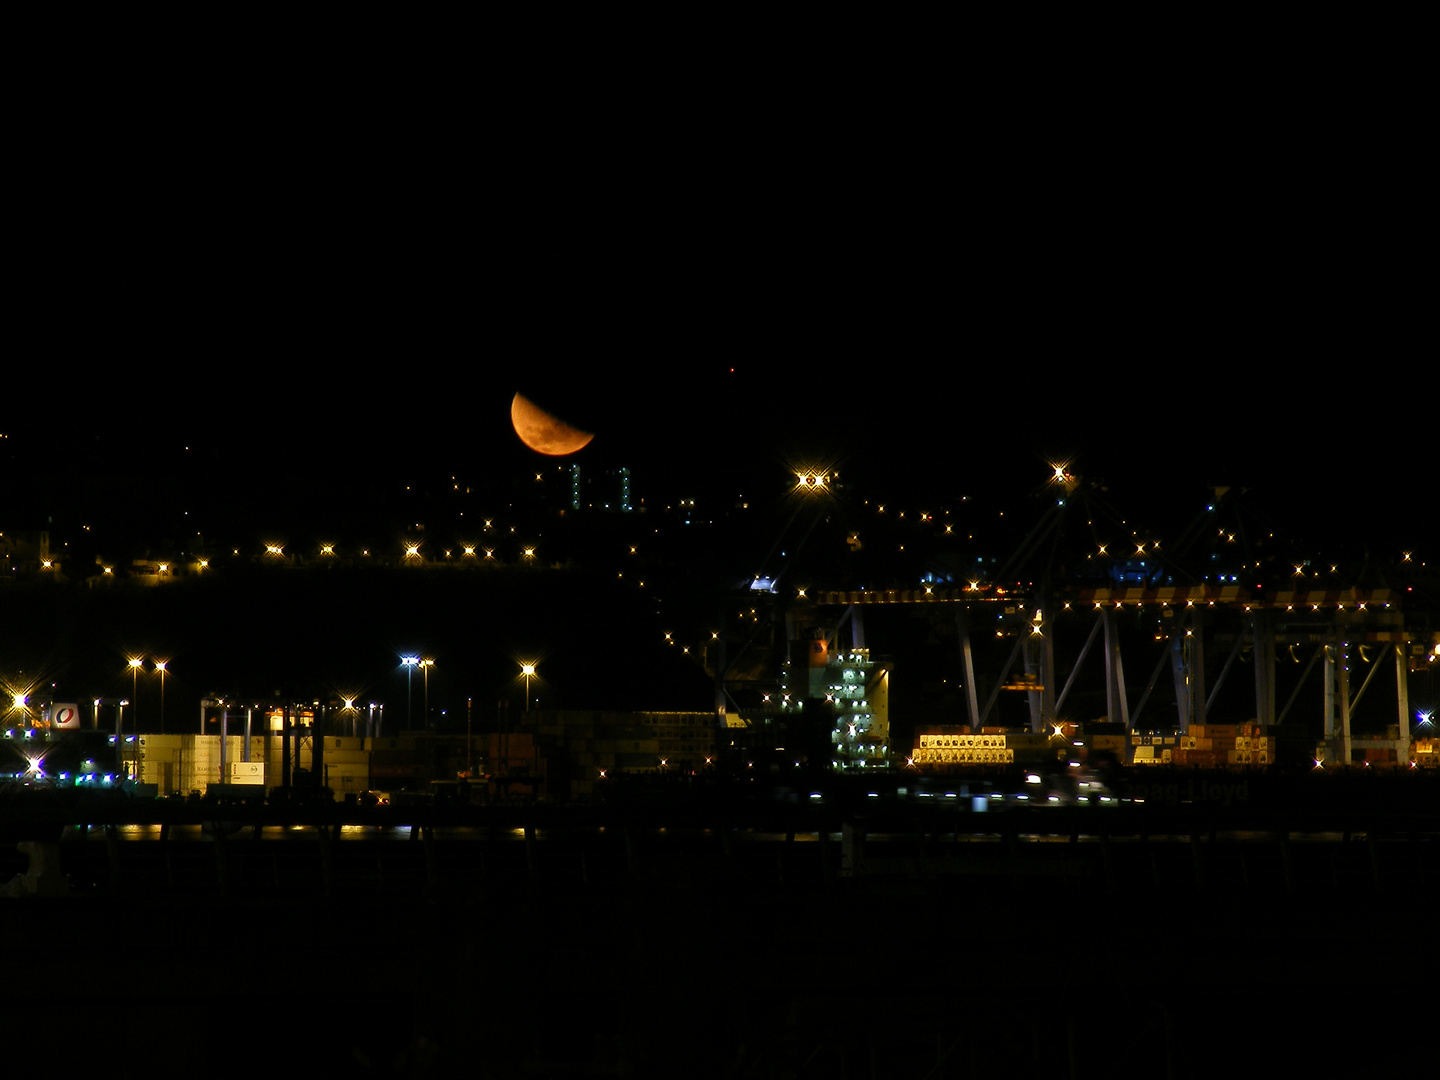 La Luna y el Puerto - Valparaiso, Chile